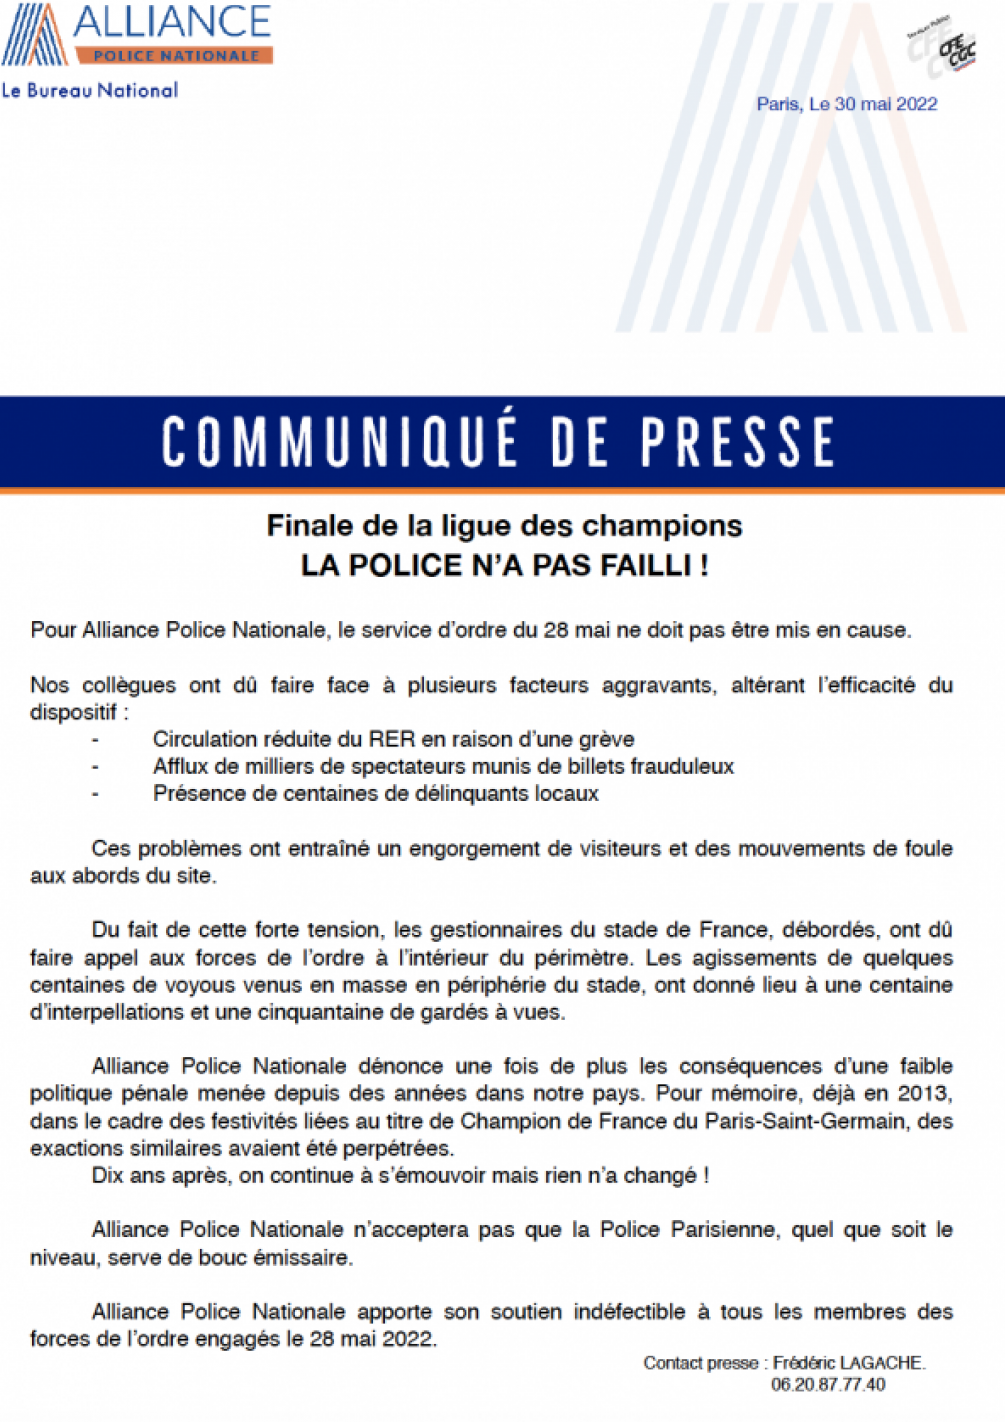 COMMUNIQUE DE PRESSE : FINALE DE LA LIGUE DES CHAMPIONS